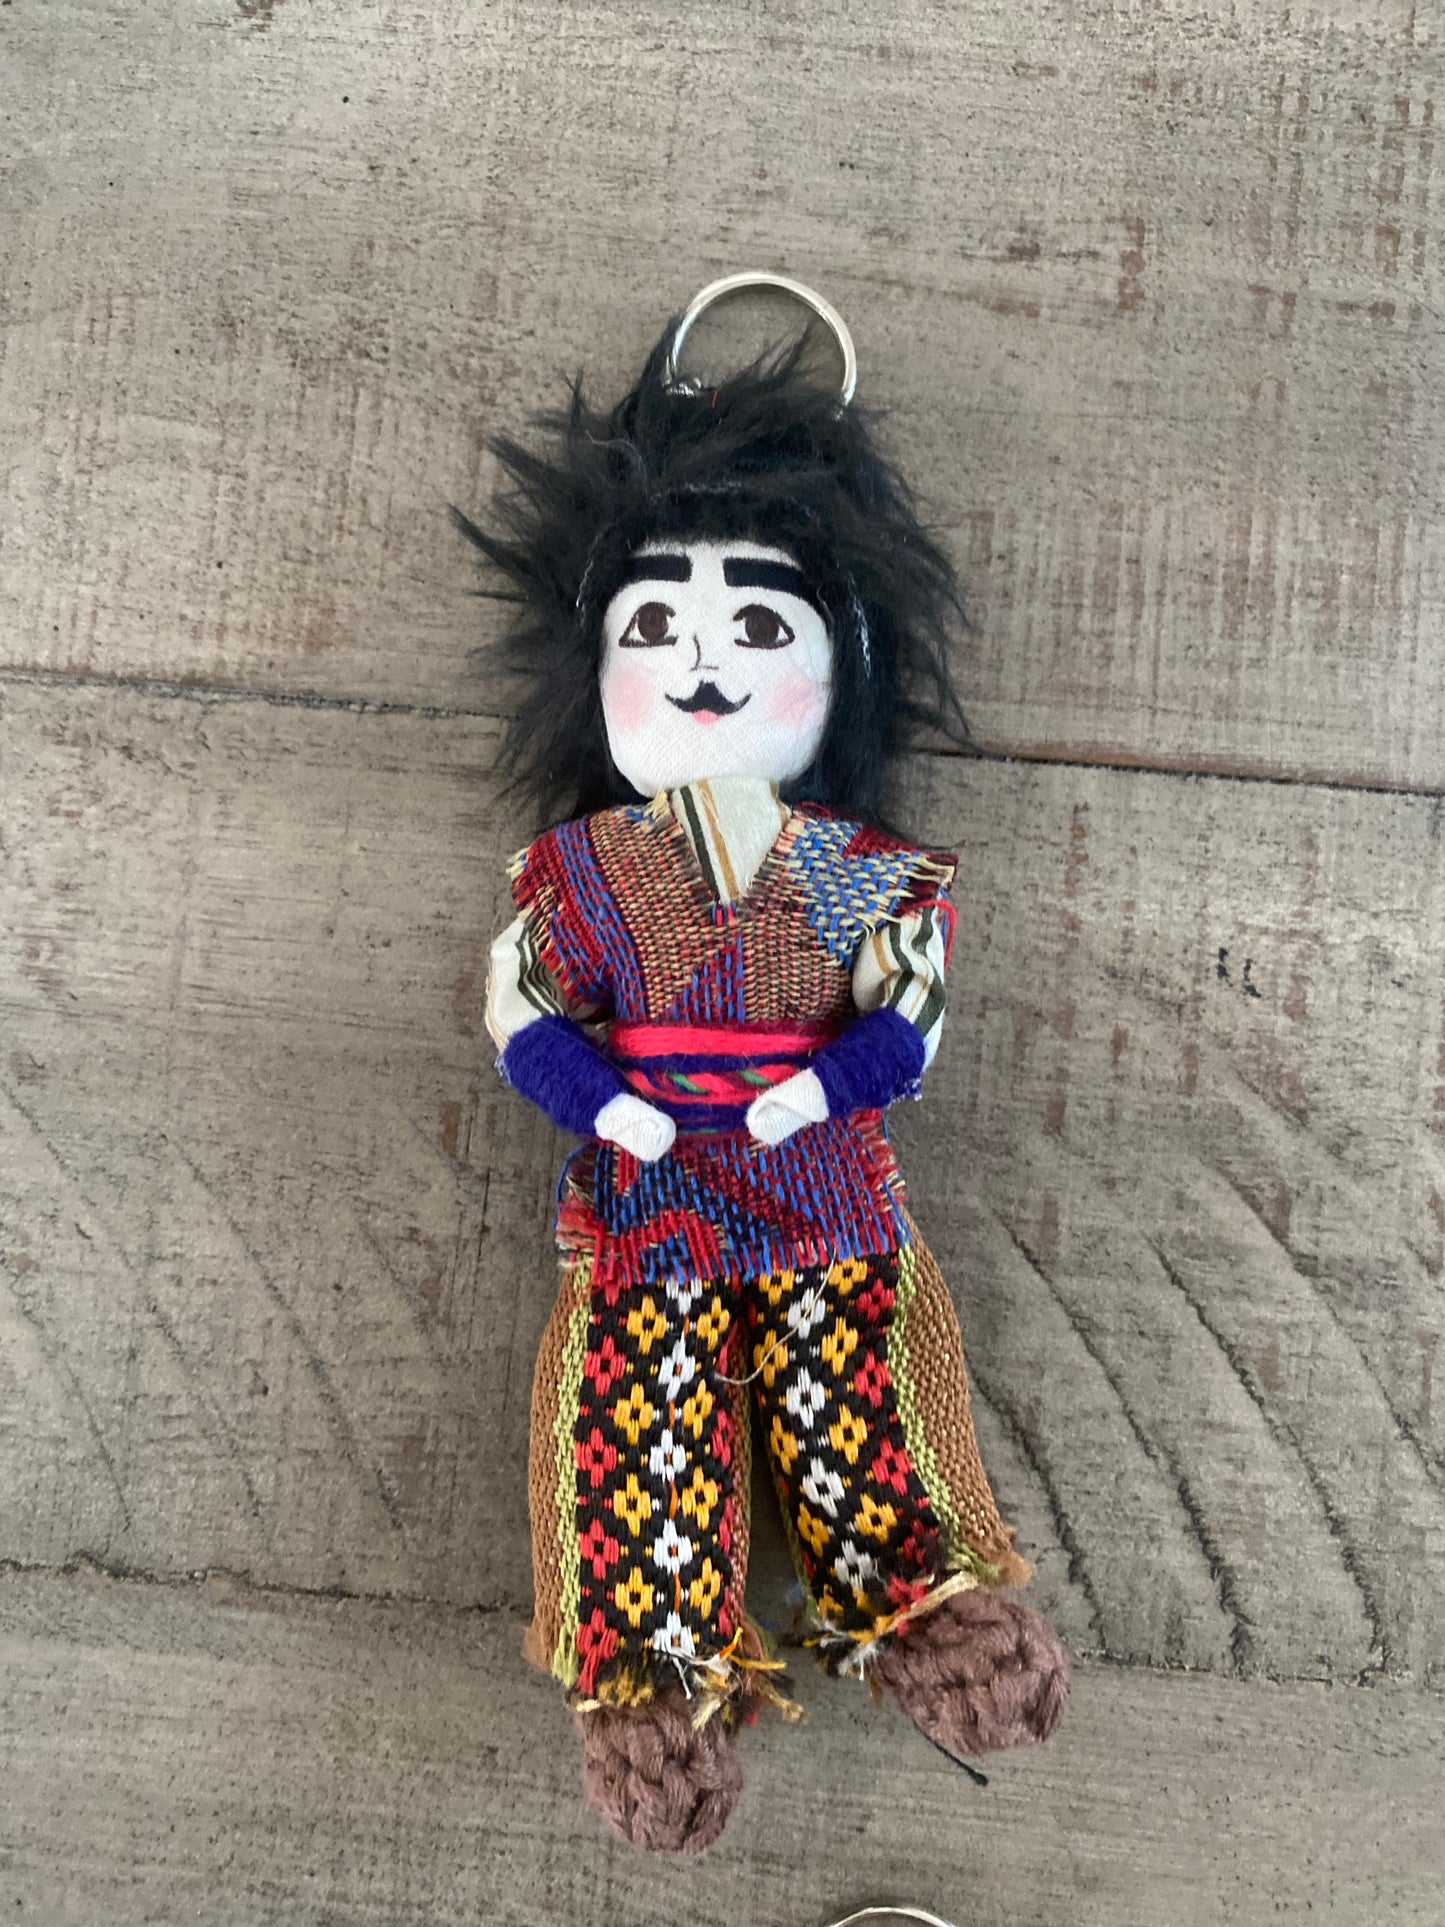 Armenian doll keychains